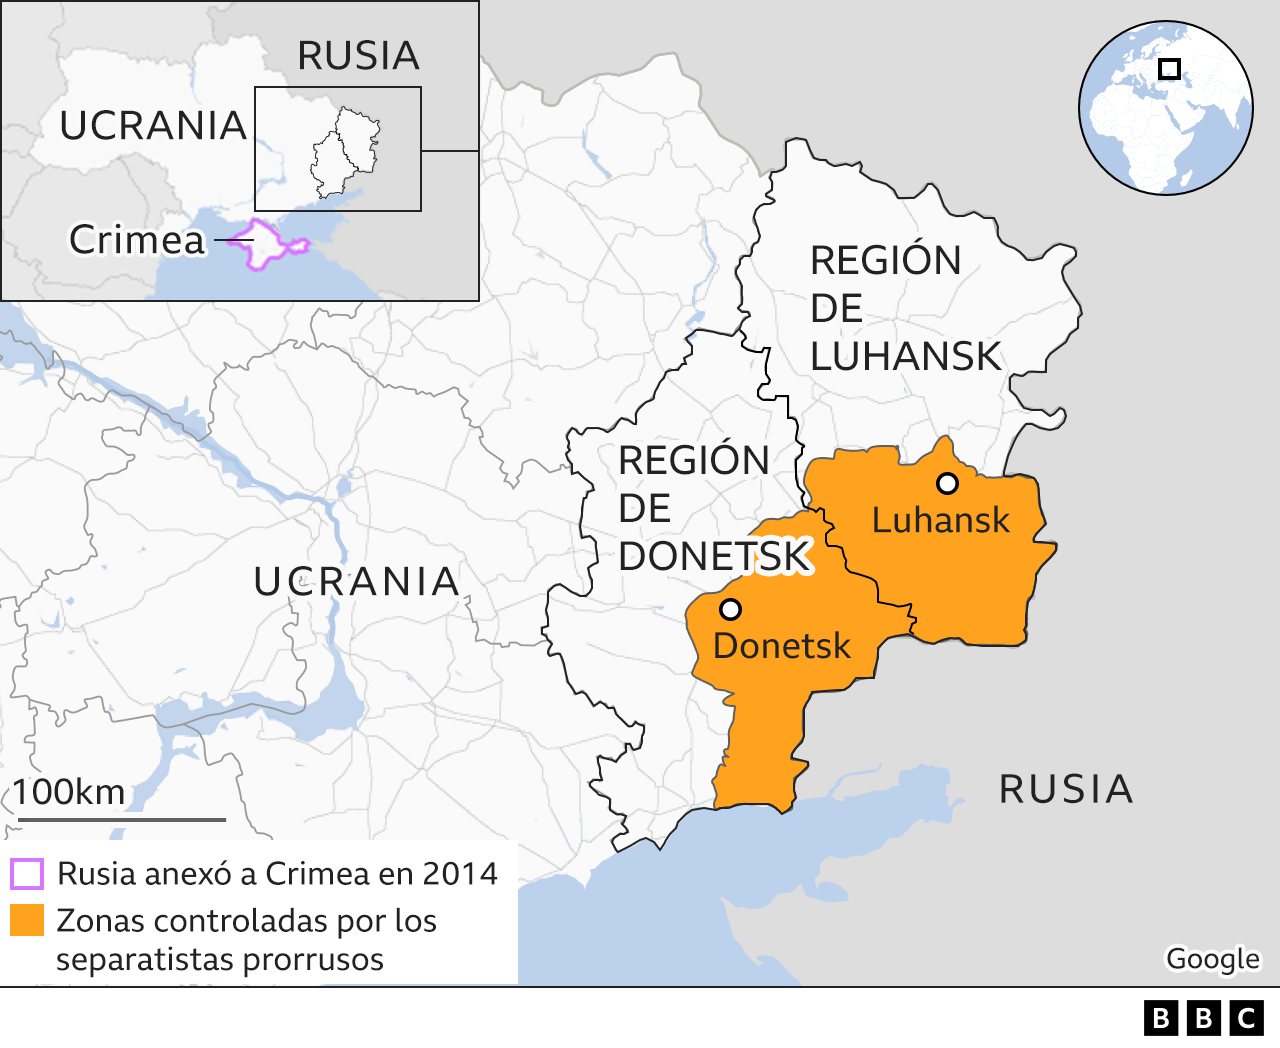 Mapa mostrando las regiones de Luhansk y Donetsk